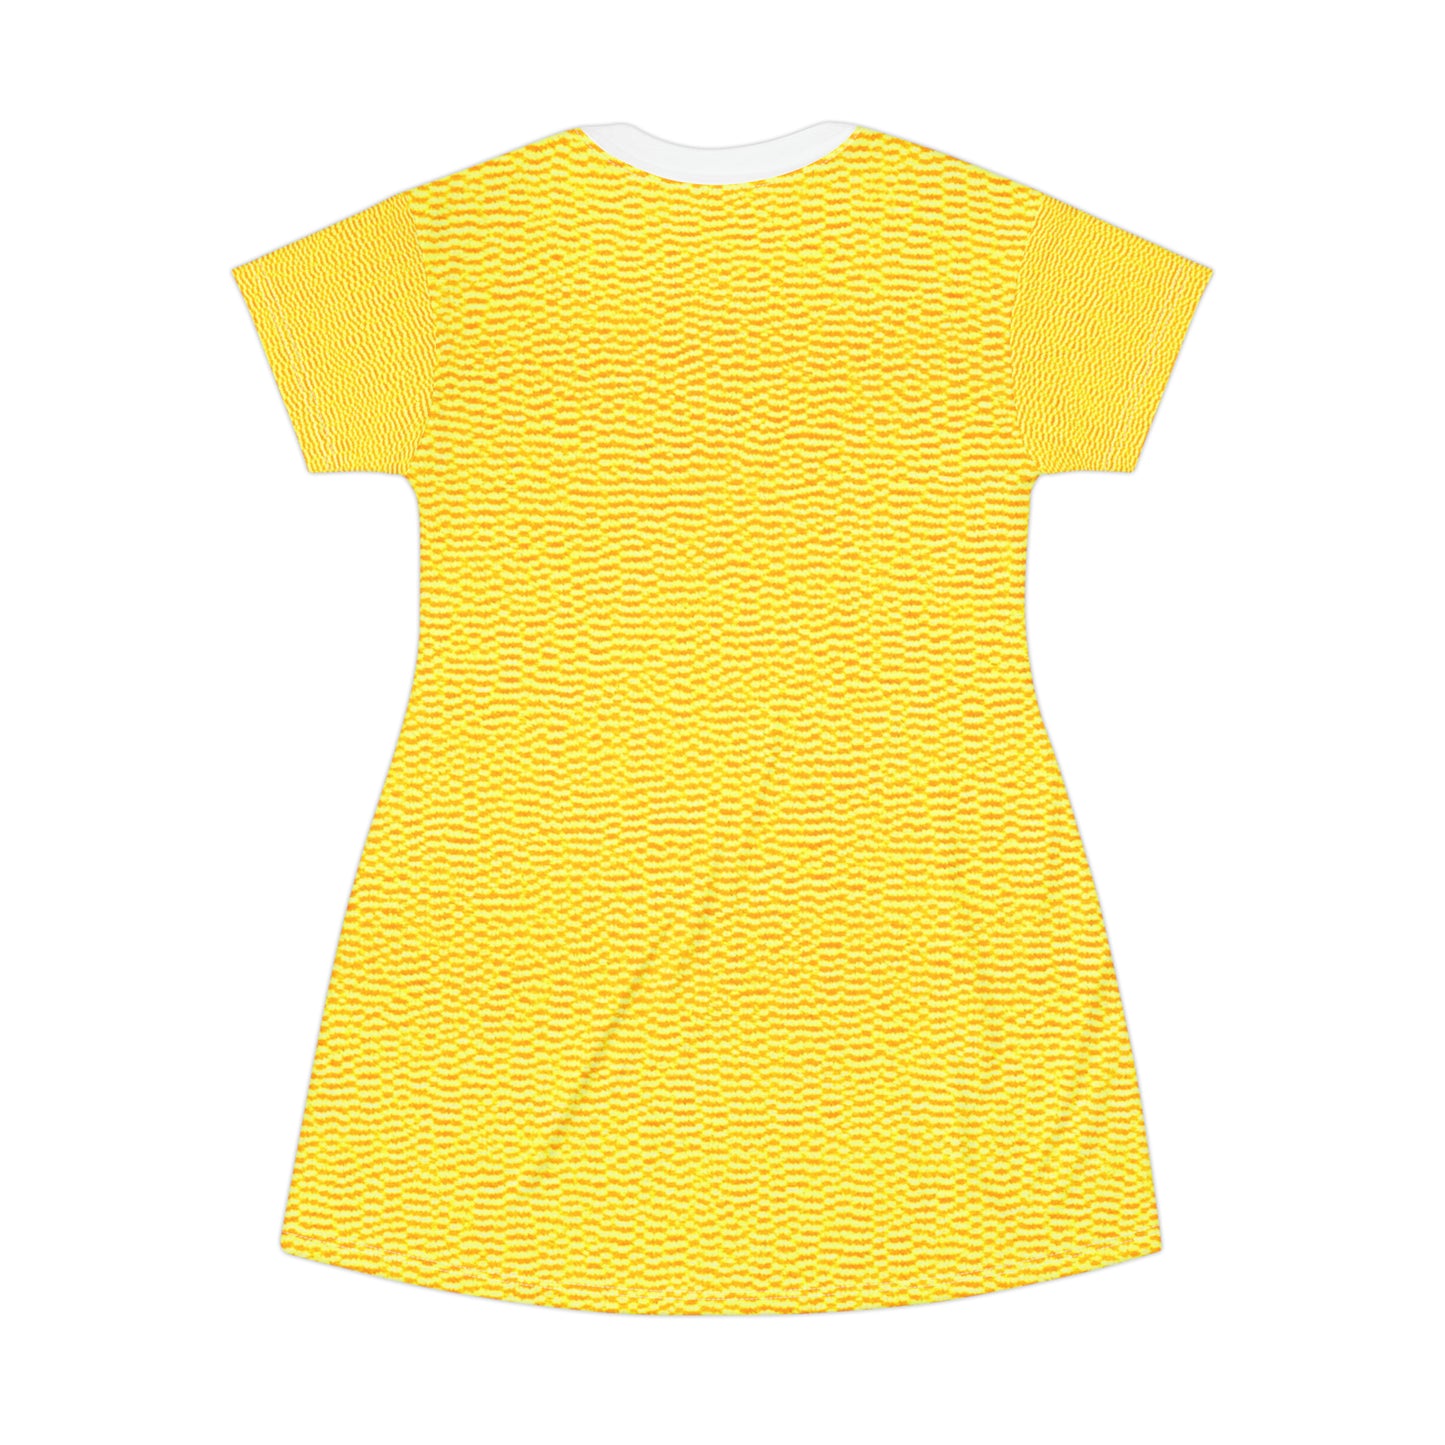 Sunshine Yellow Lemon: Denim-Inspired, Cheerful Fabric - T-Shirt Dress (AOP)